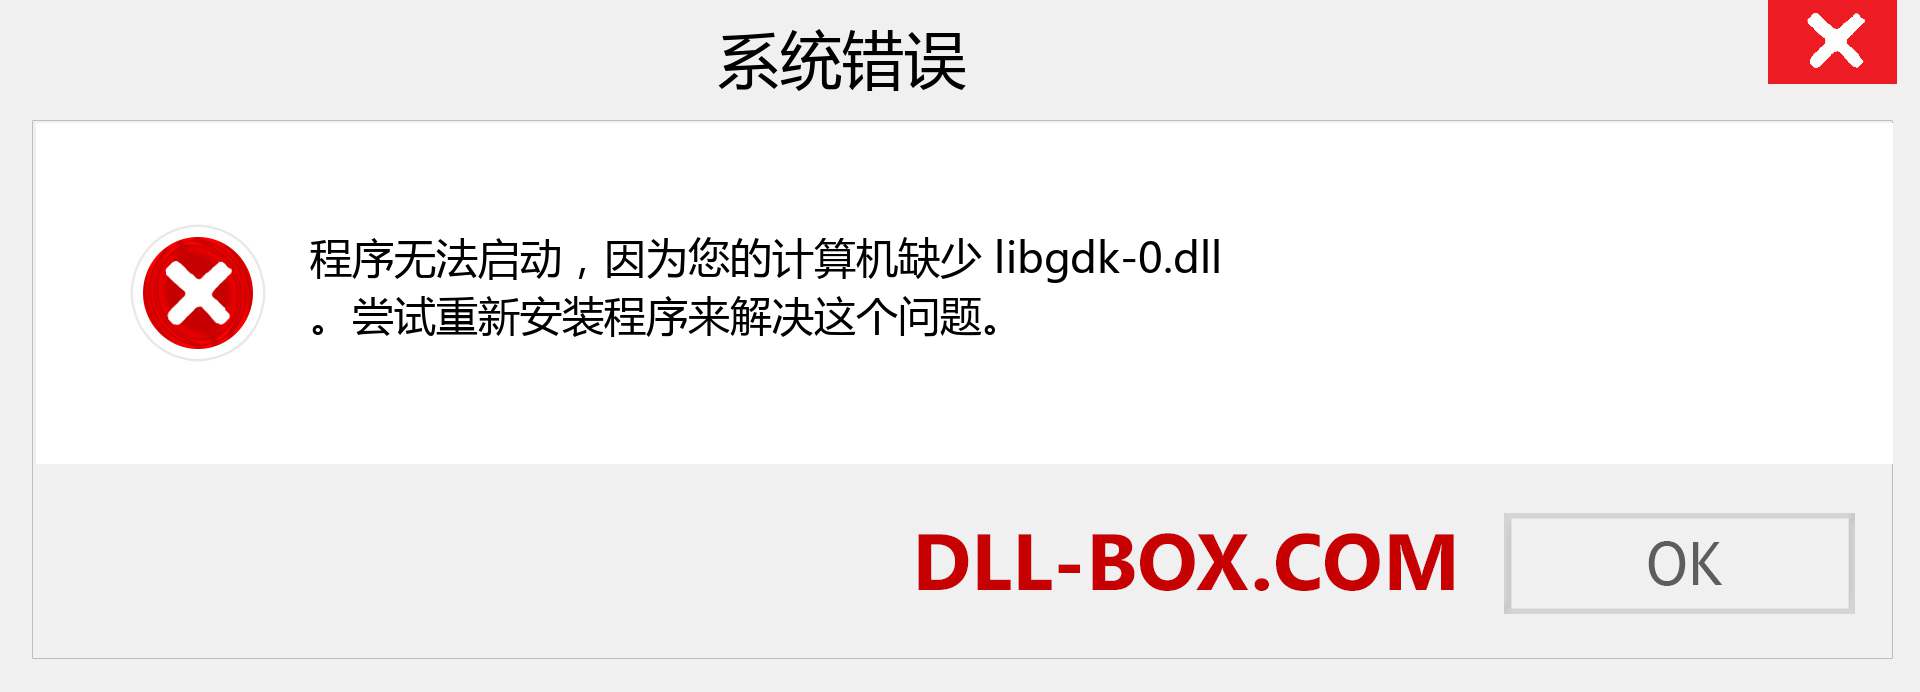 libgdk-0.dll 文件丢失？。 适用于 Windows 7、8、10 的下载 - 修复 Windows、照片、图像上的 libgdk-0 dll 丢失错误